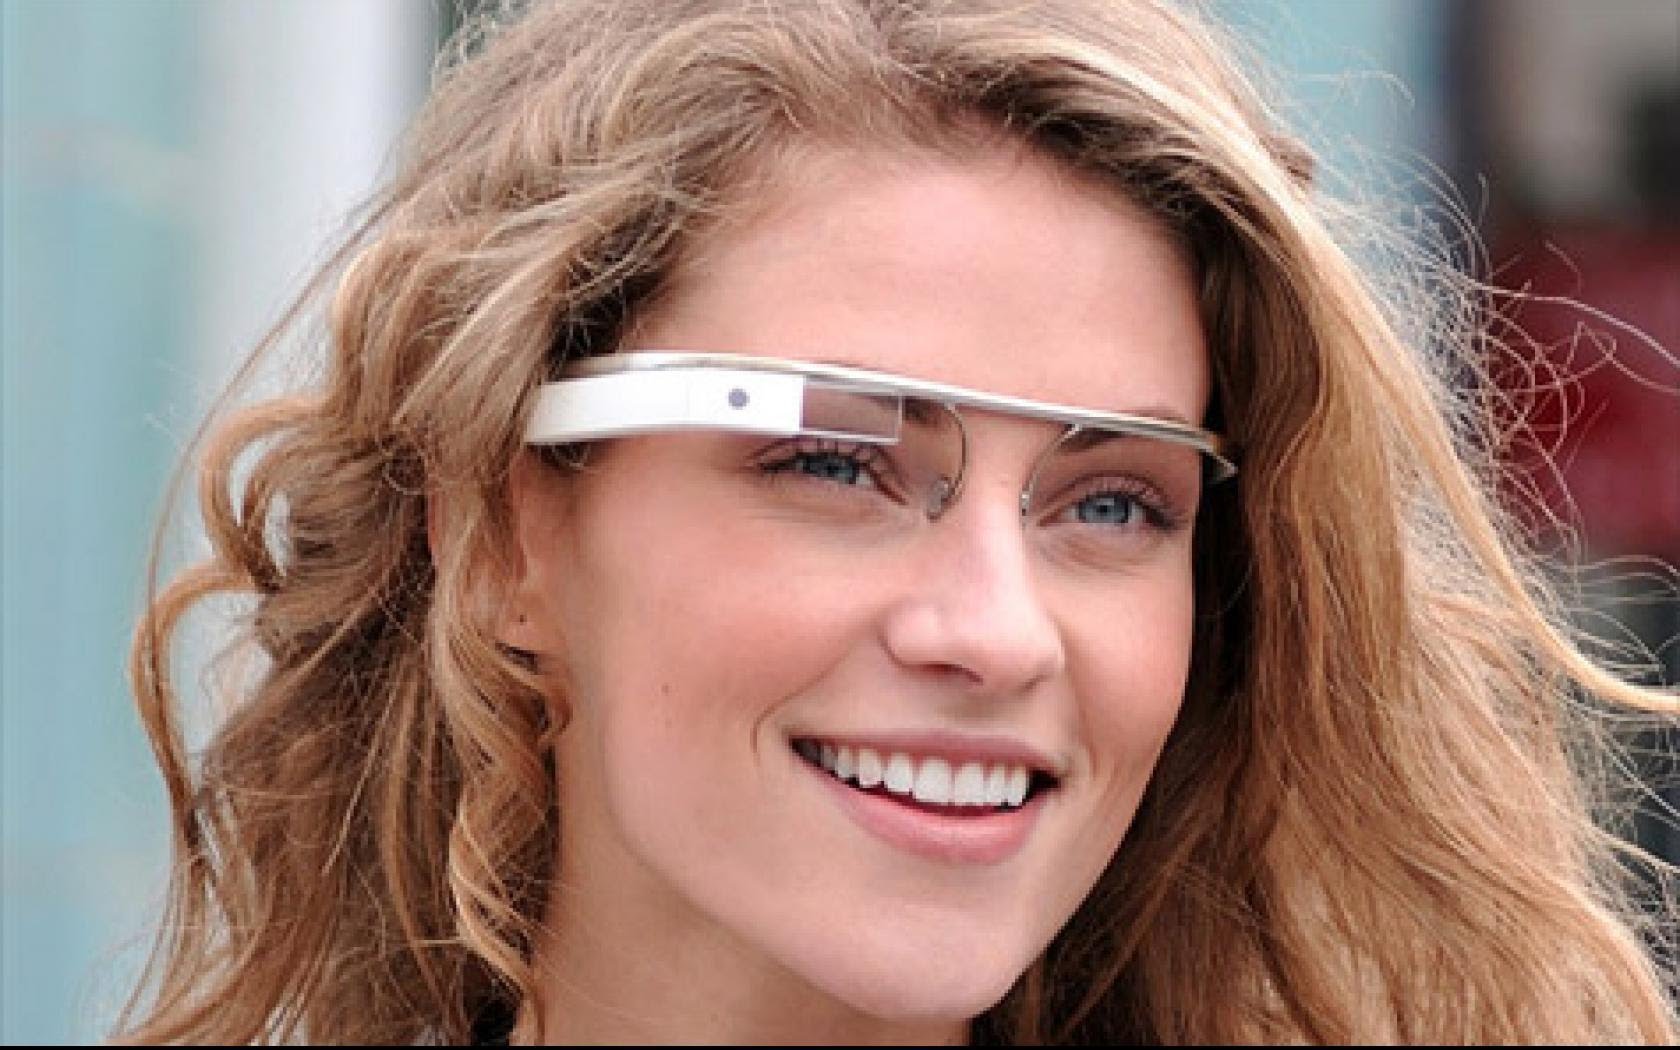 google glass tout savoir sur les lunettes google